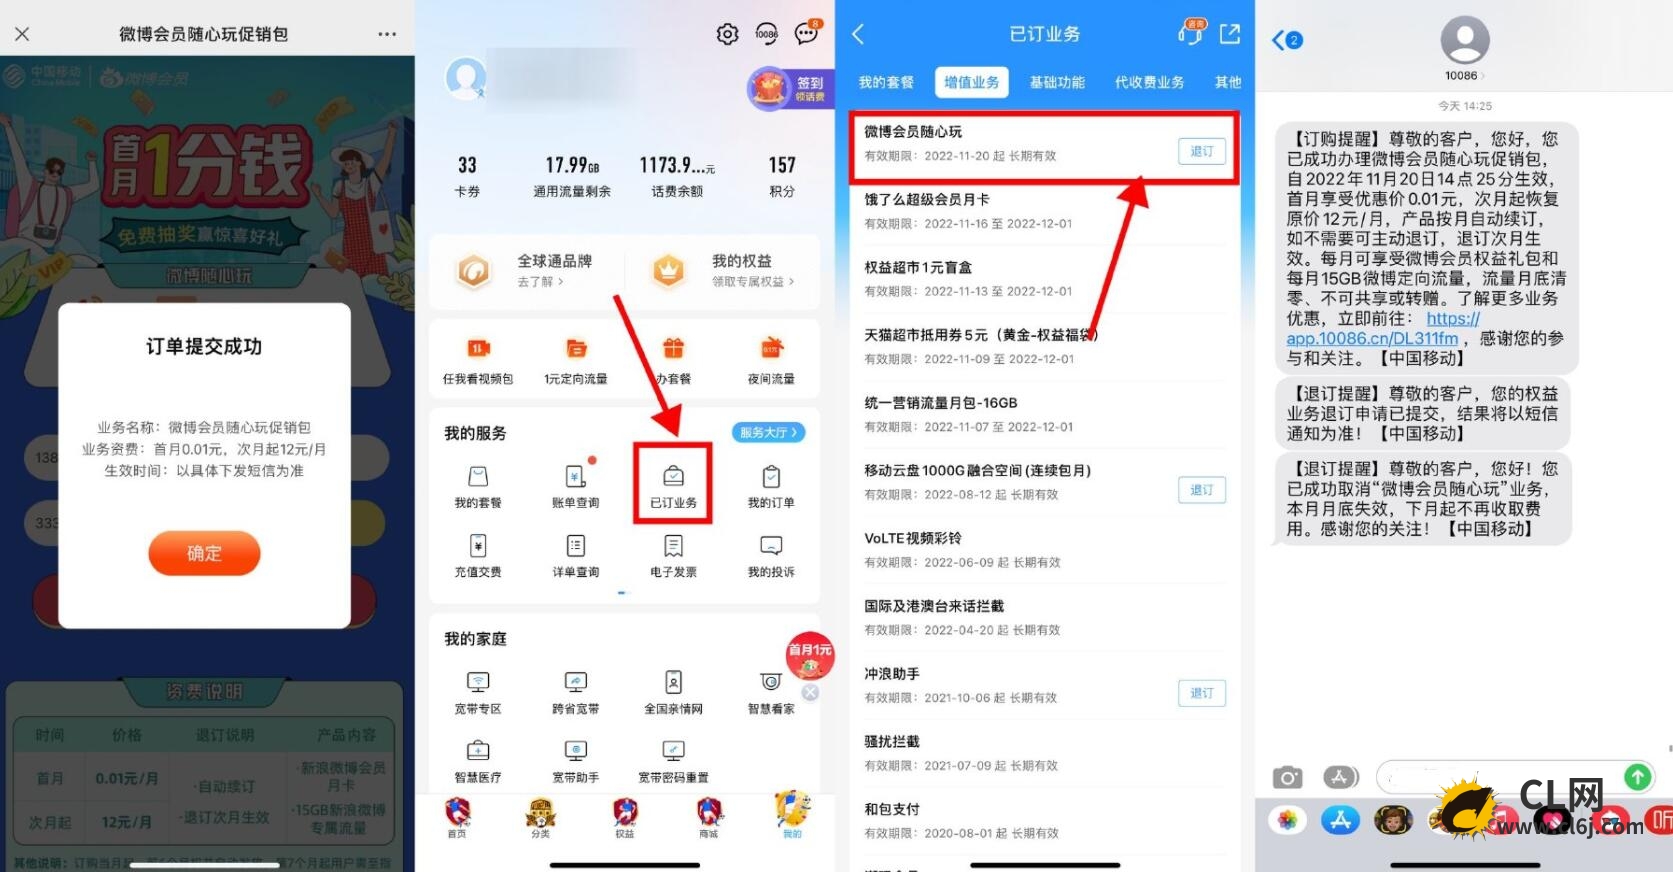 移动用户0.01元撸微博会员月卡-CL网